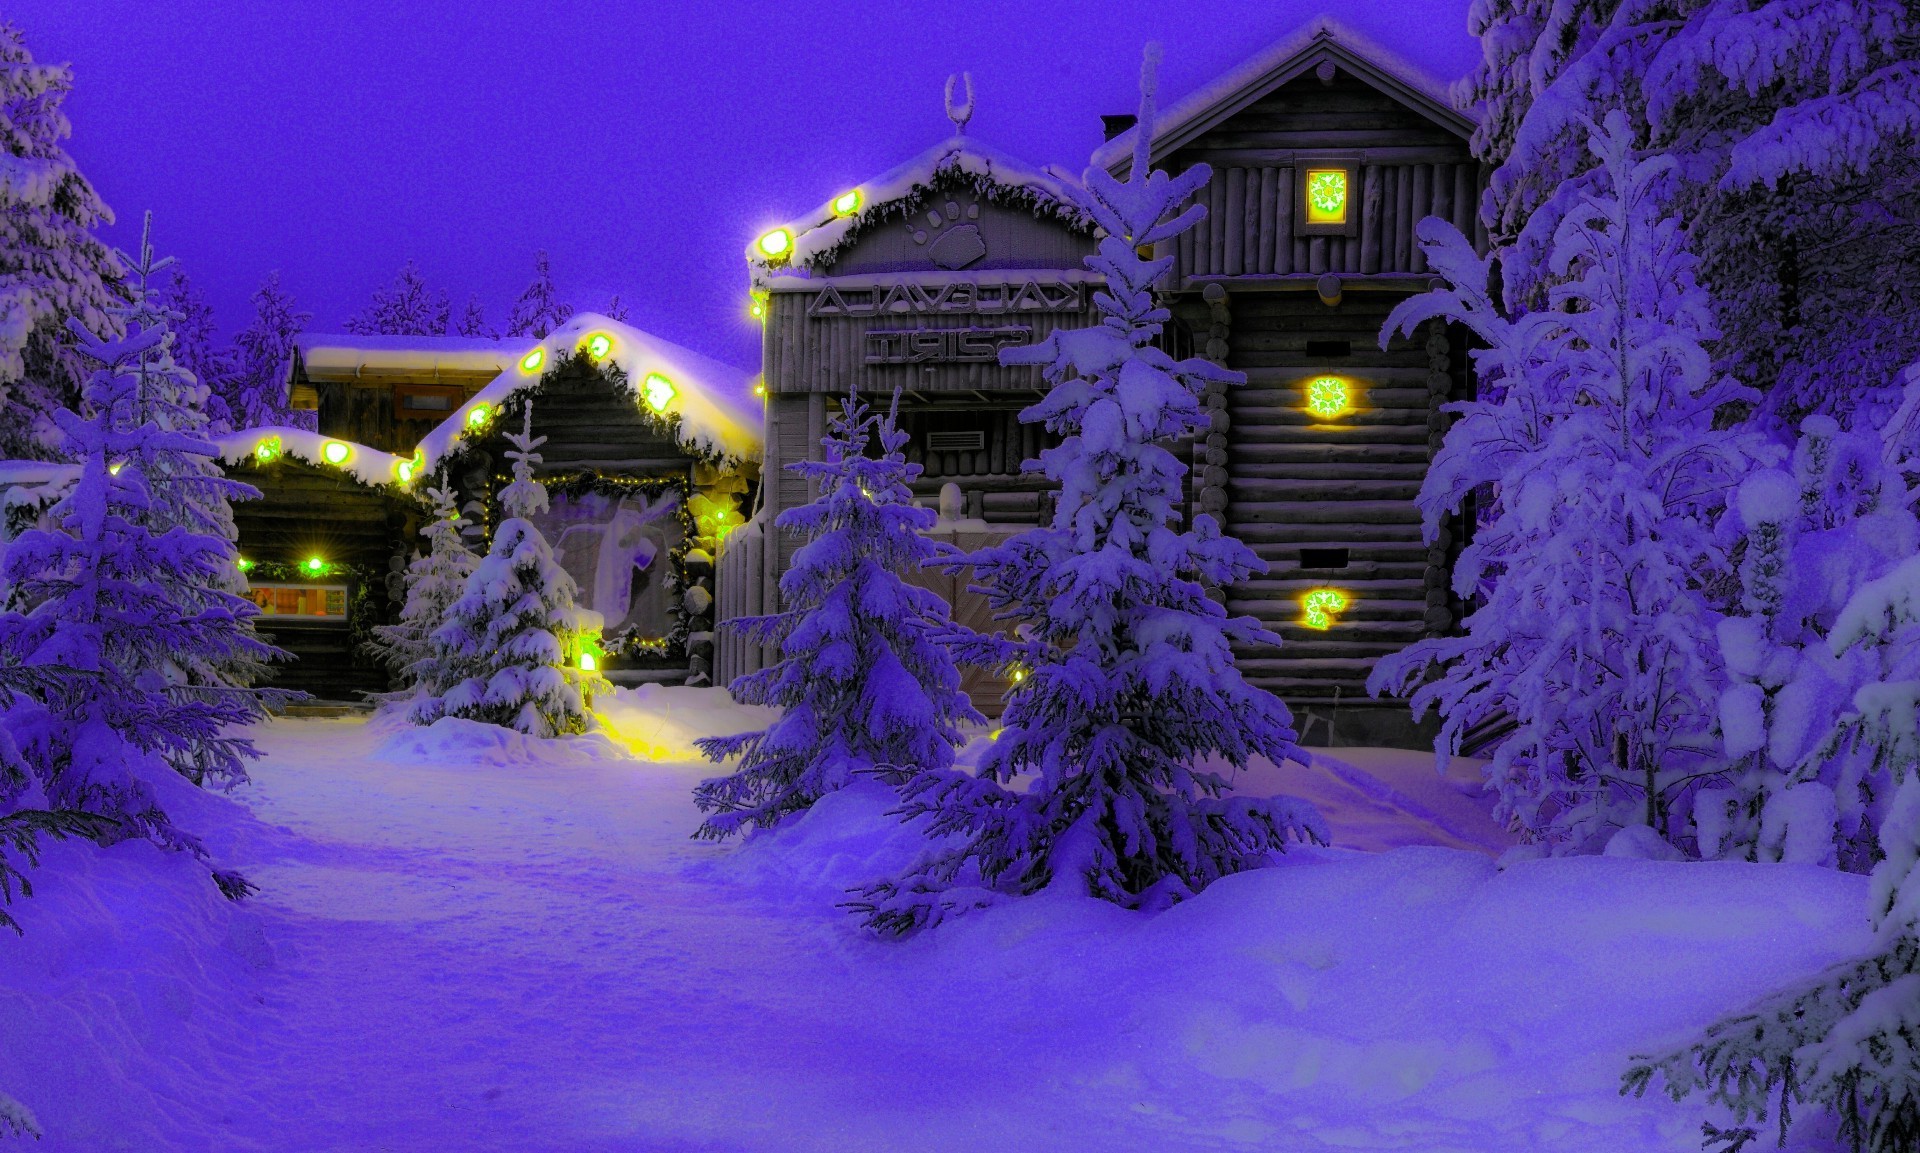 дома и коттеджи рождество зима снег вечером дерево на открытом воздухе подсветкой сезон сумрак природа свет украшения яркий праздник путешествия пейзаж рождественская елка отпуск сцена